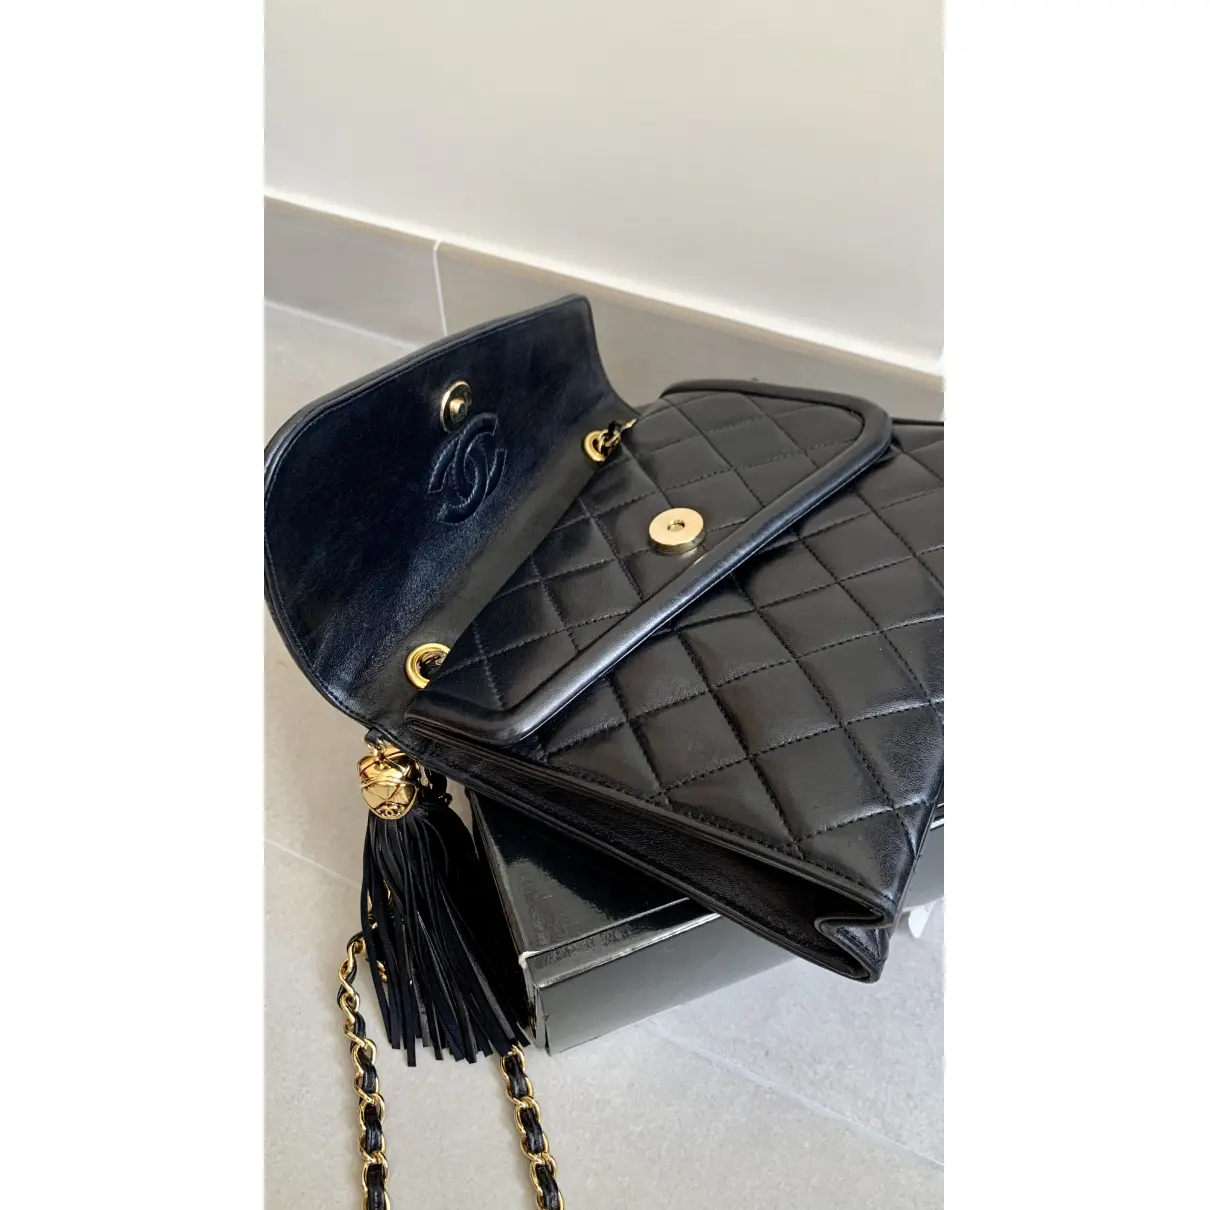 Buy Chanel Leather bag online - Vintage